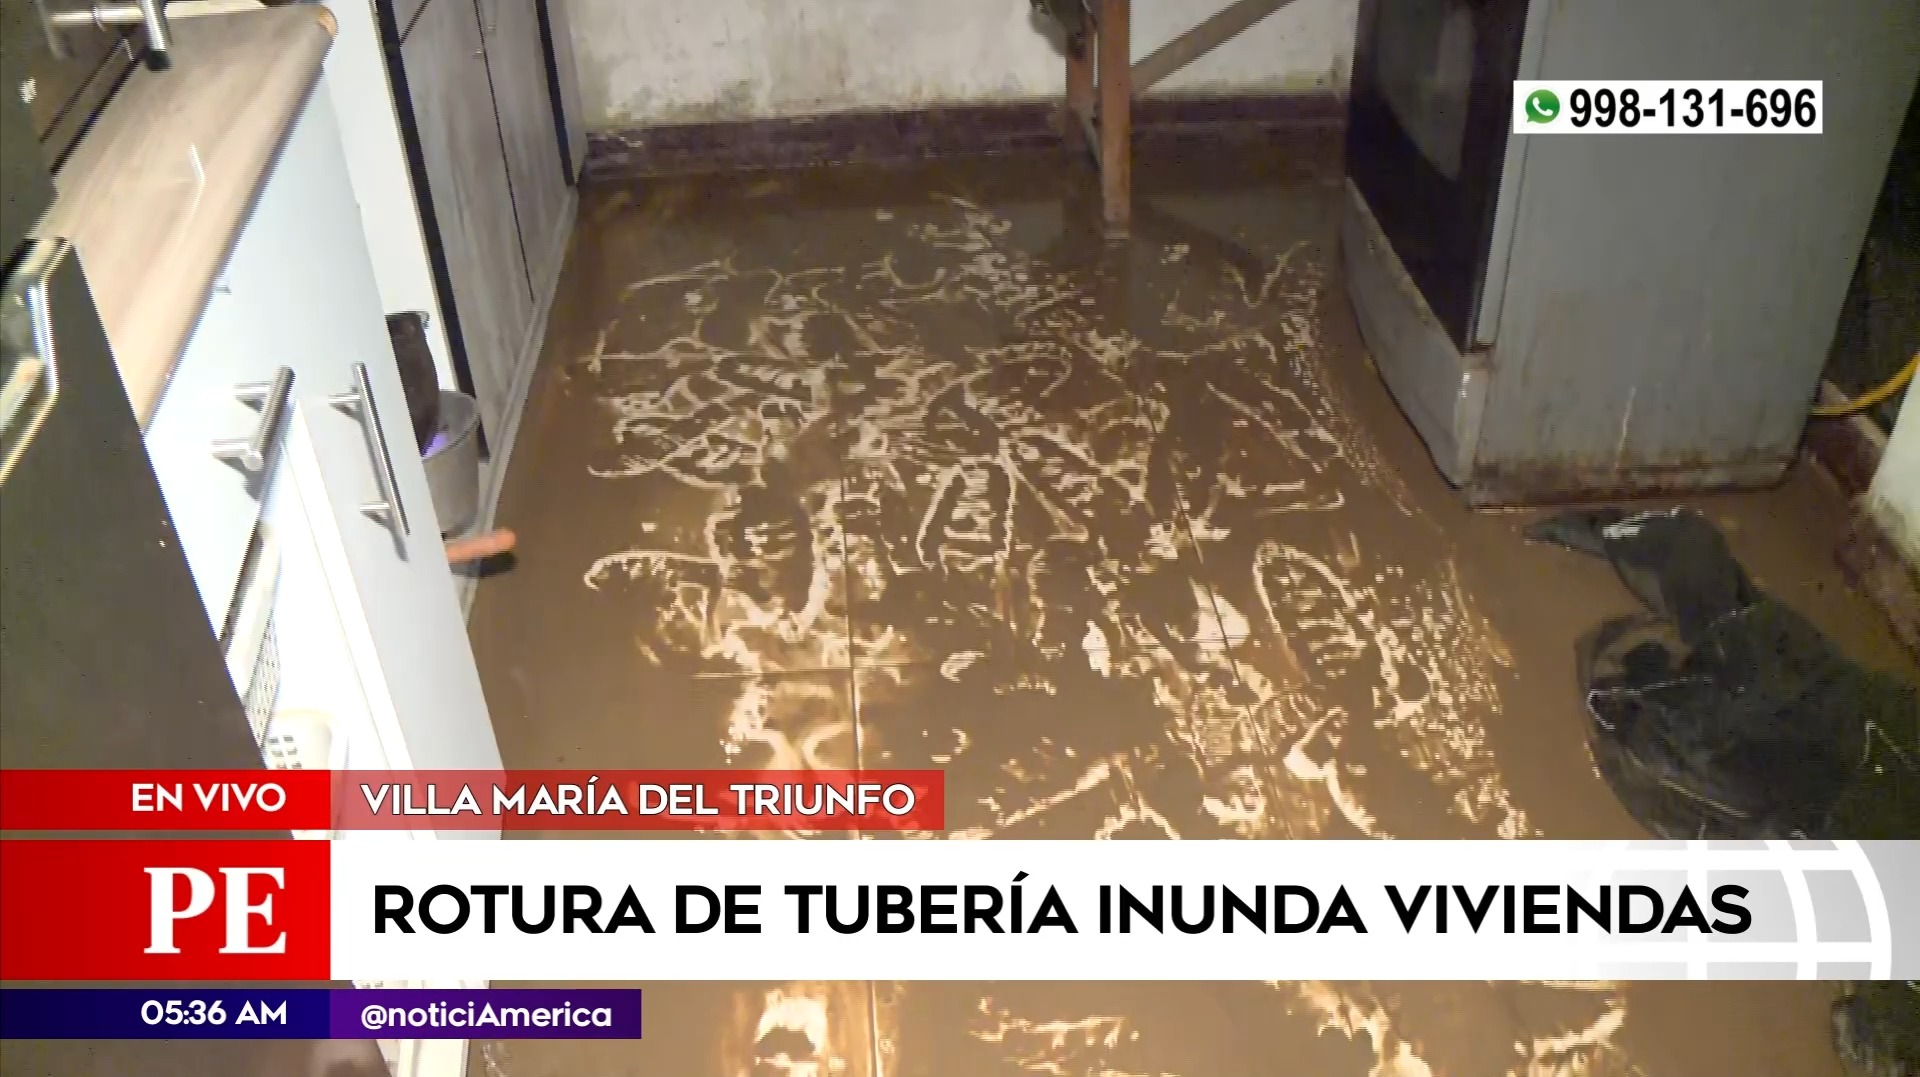 Rotura de tubería inunda viviendas en Villa María del Triunfo. Foto: América Noticias